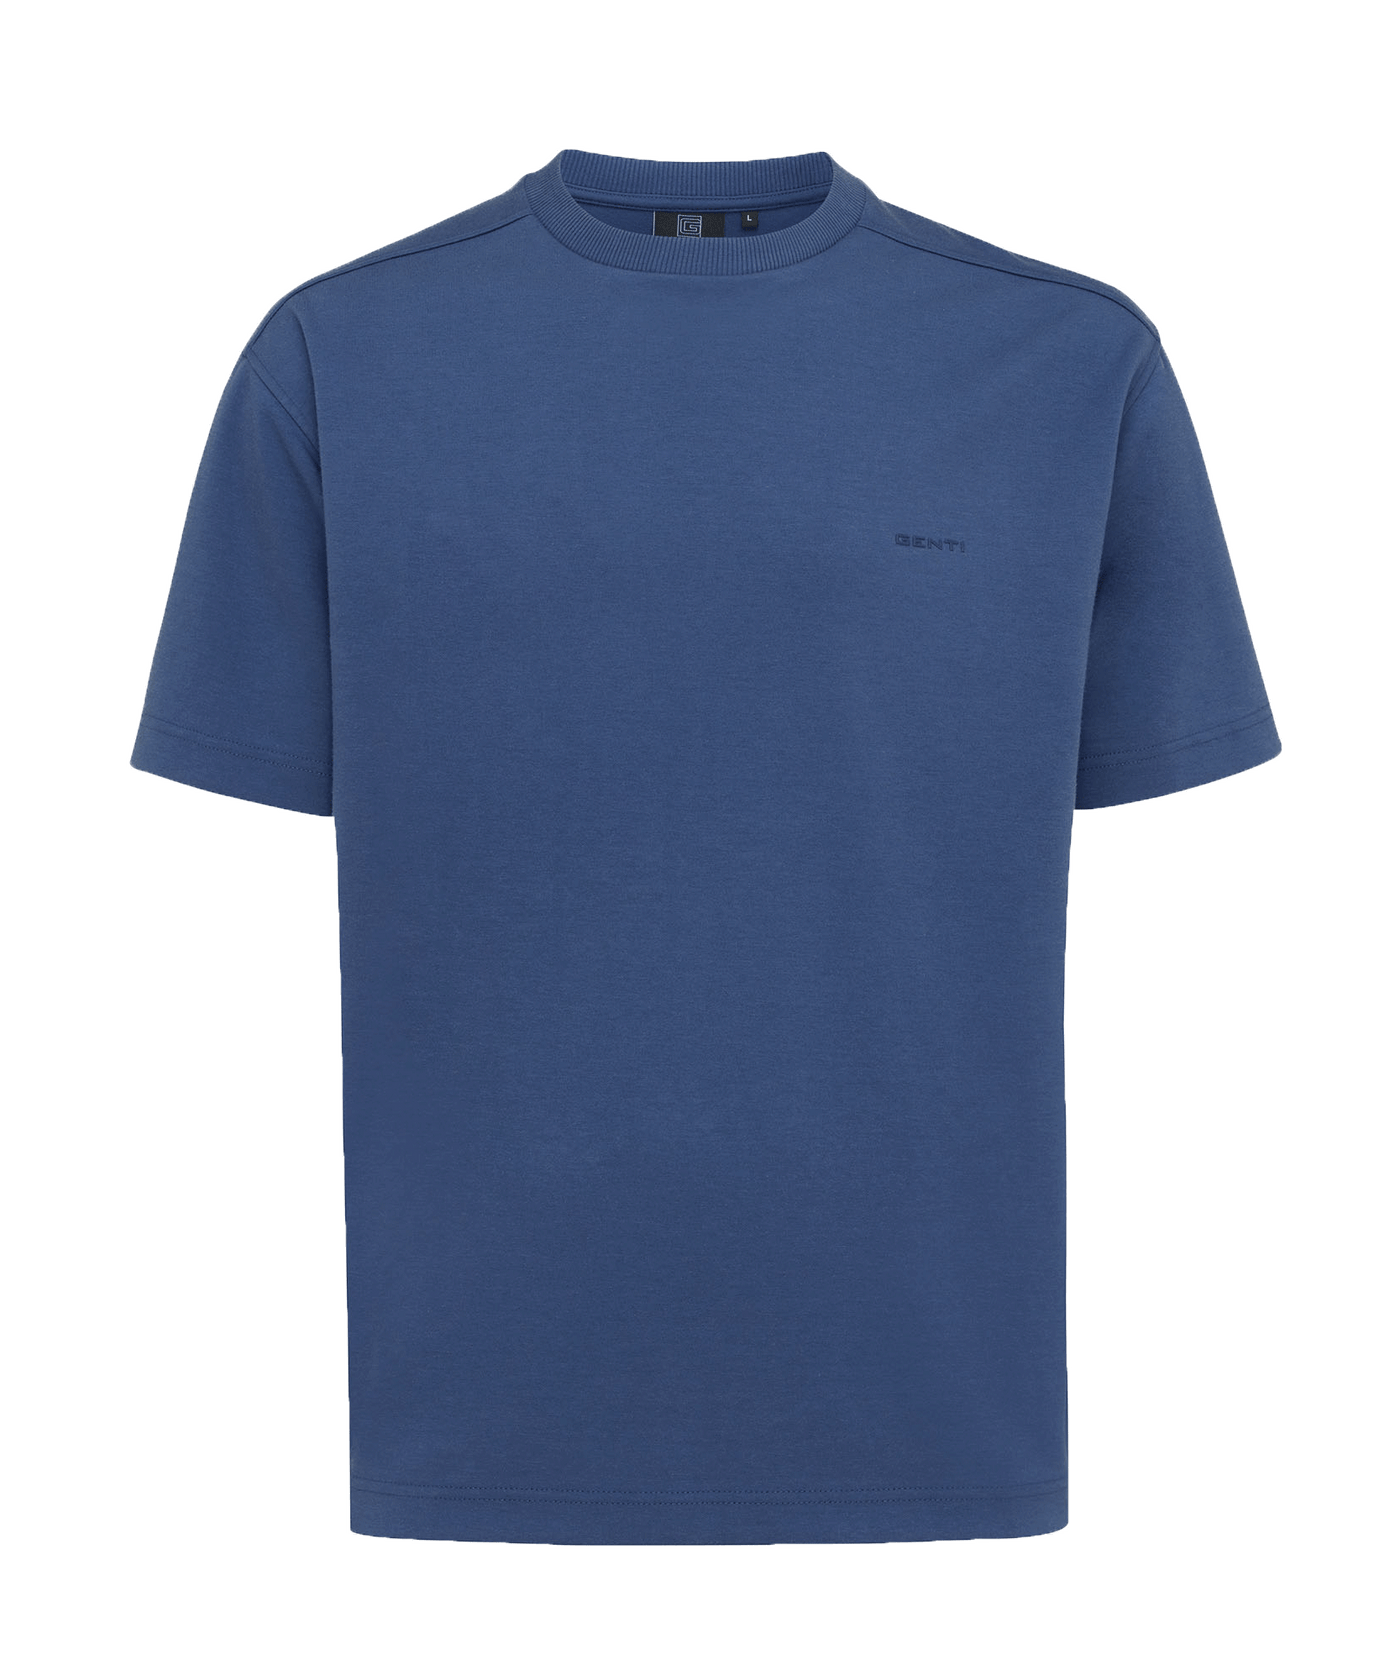 Genti - J9044-1227 - T-shirt Ss - 114 Blue